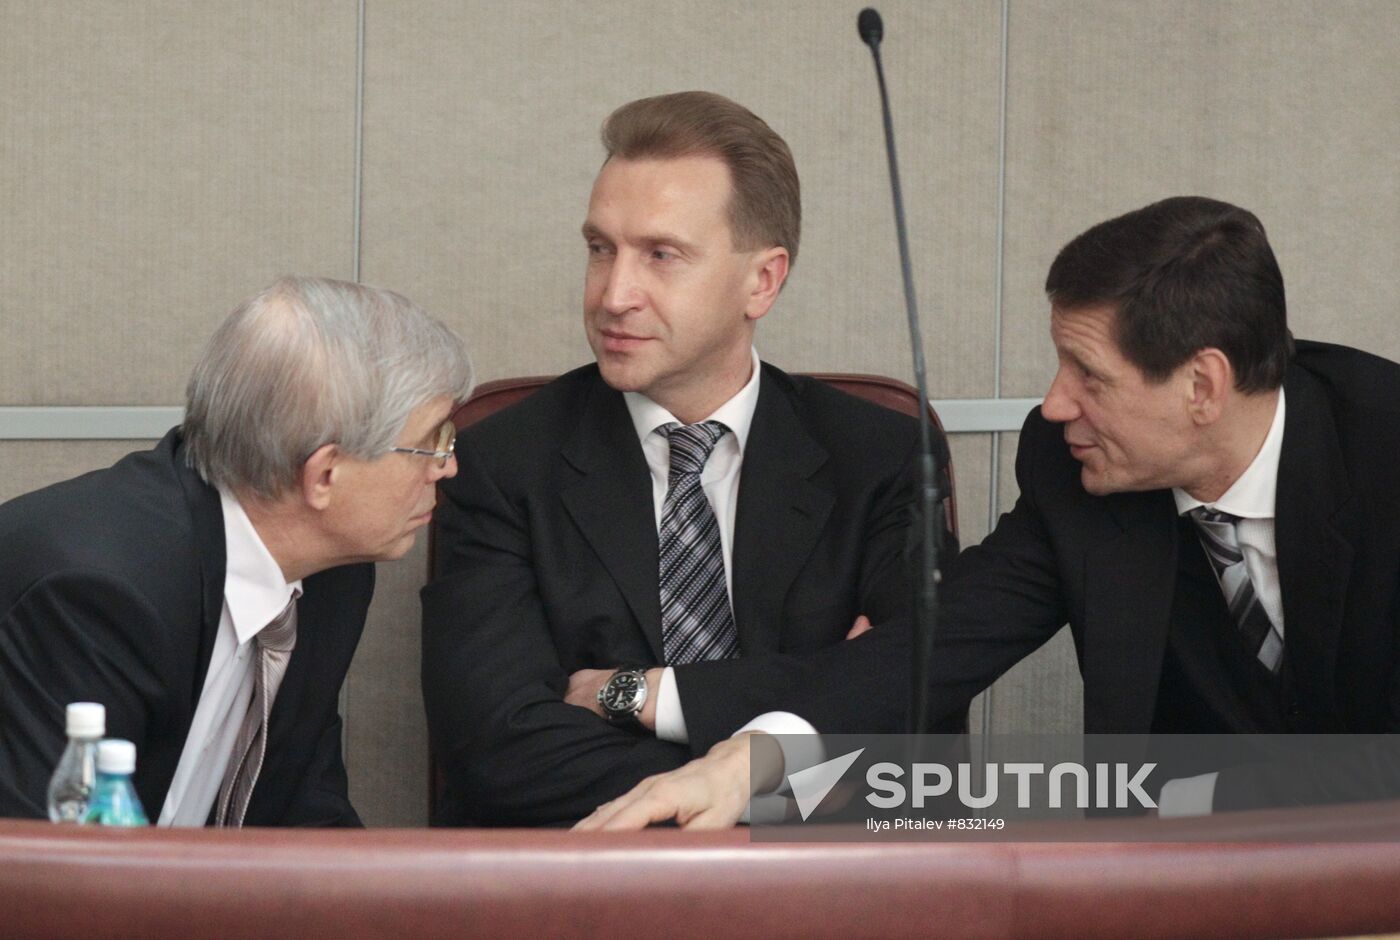 Sergei Ignatyev, Igor Shuvalov and Alexander Zhukov